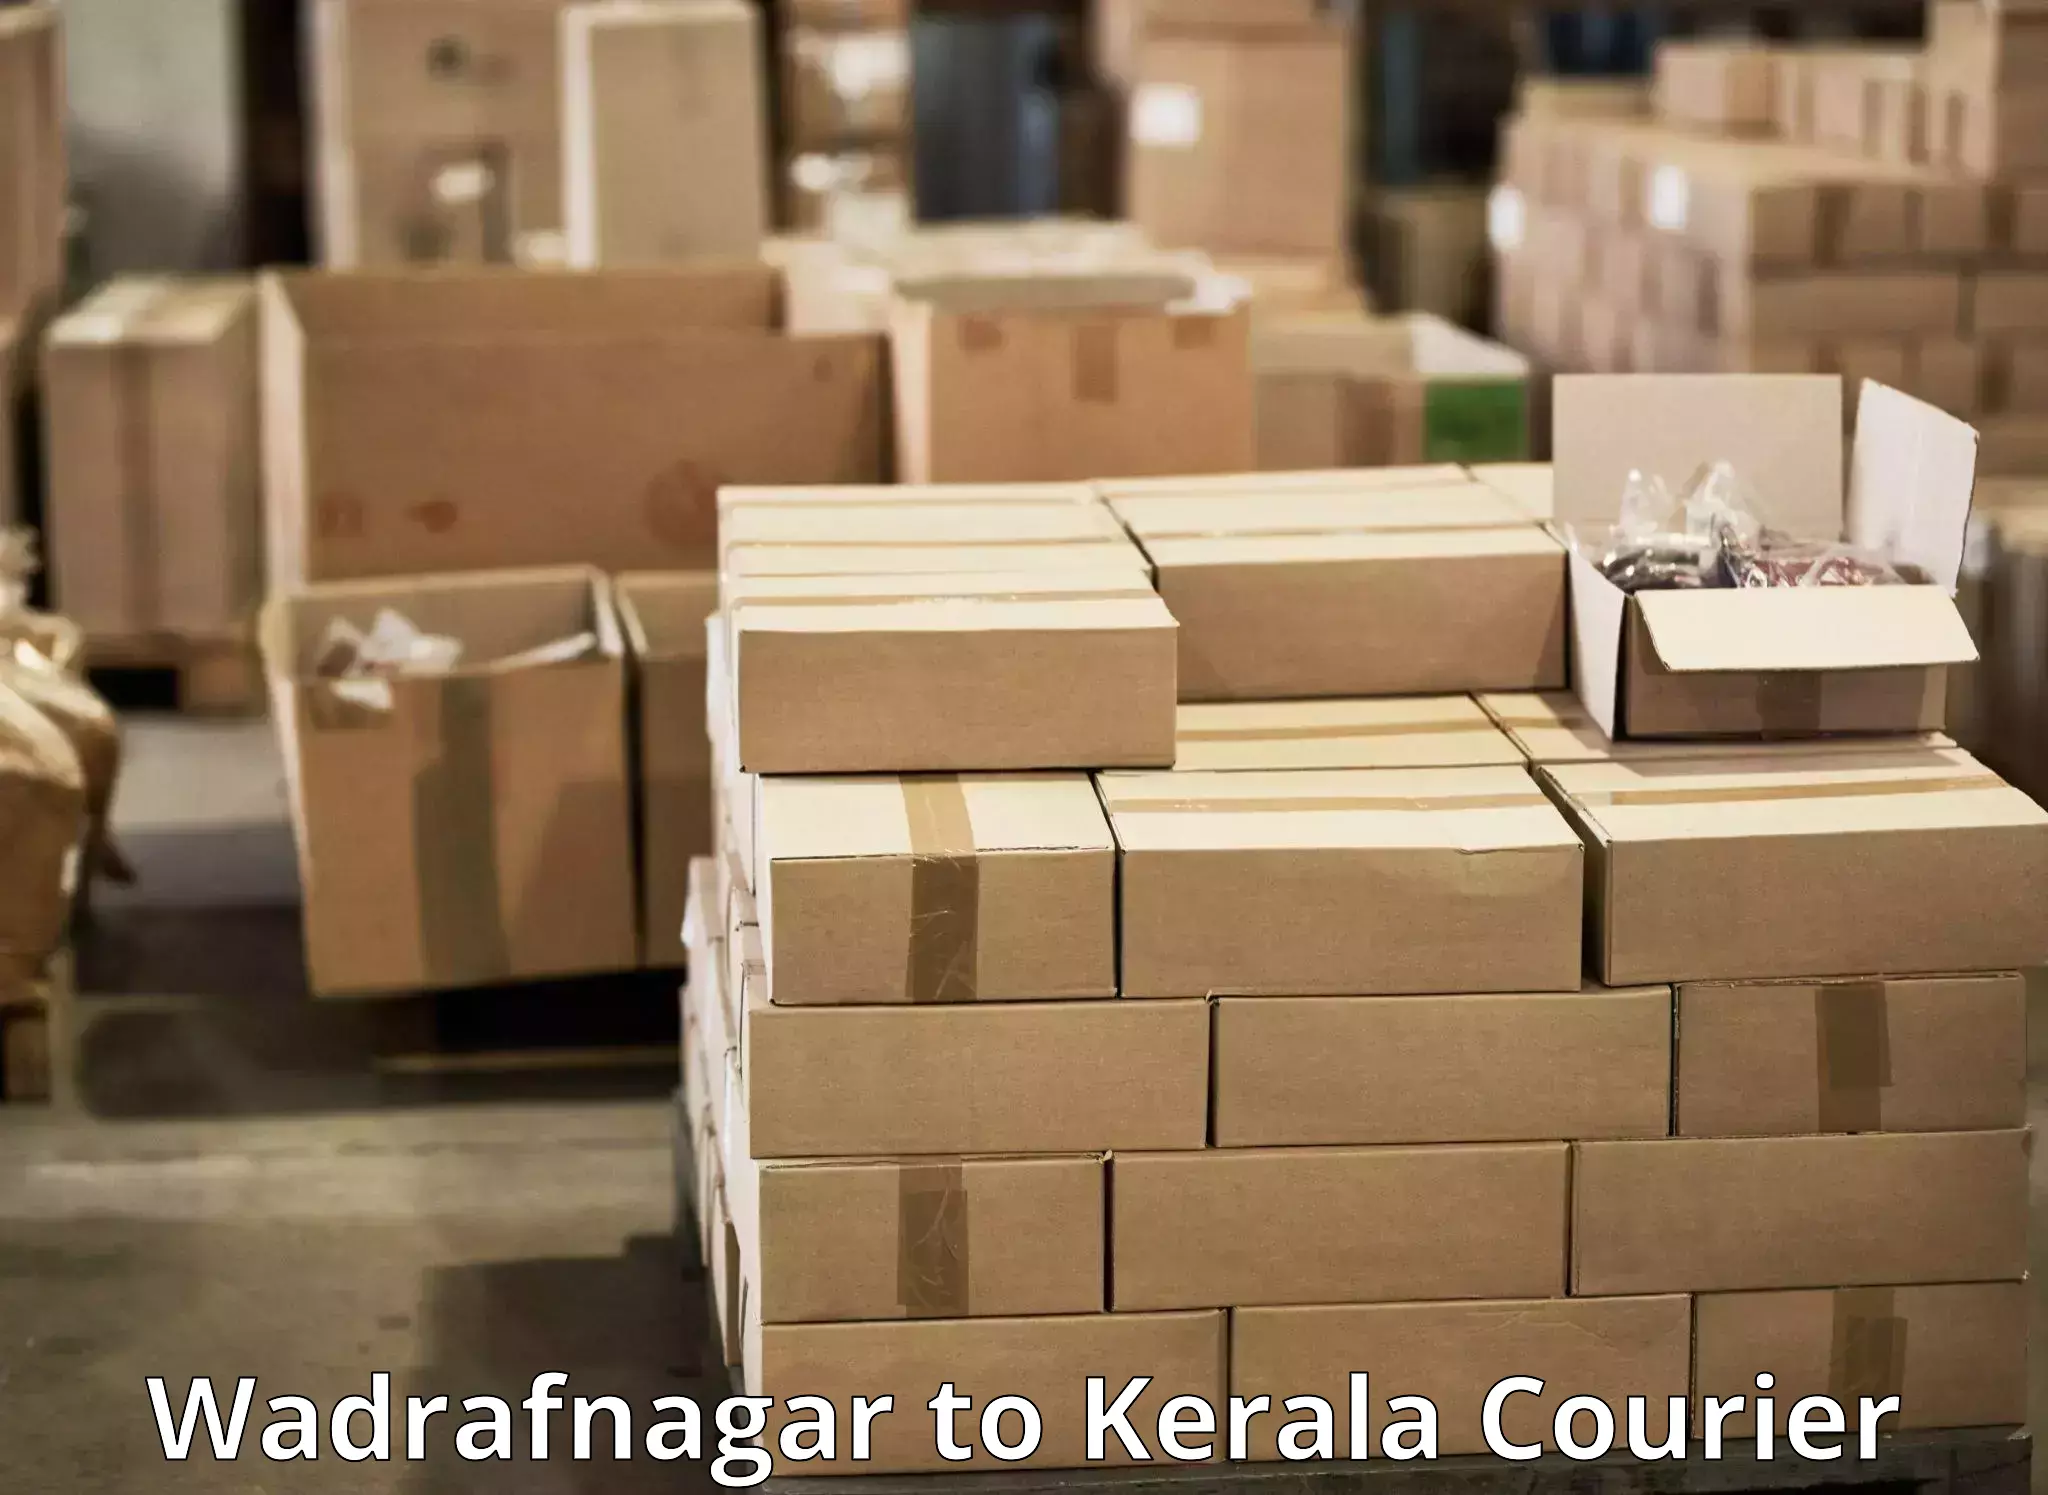 Modern courier technology Wadrafnagar to Kalluvathukkal